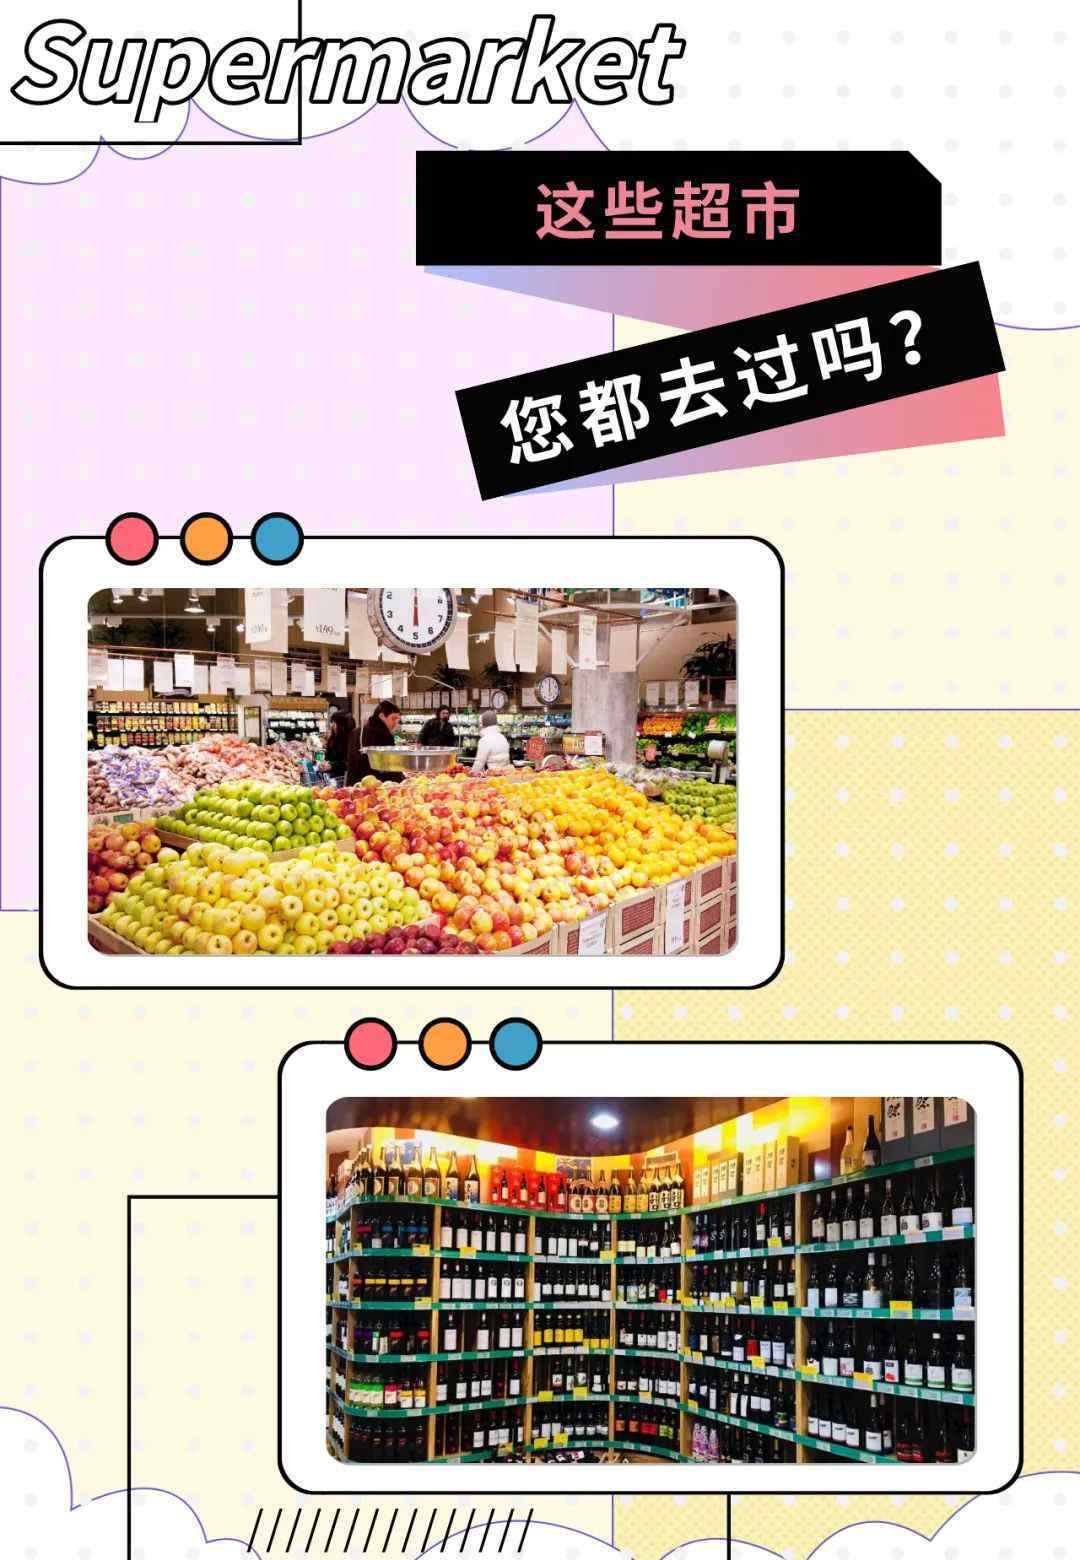 北京沃尔玛超市 不知道北京有哪些好逛的超市？看这里